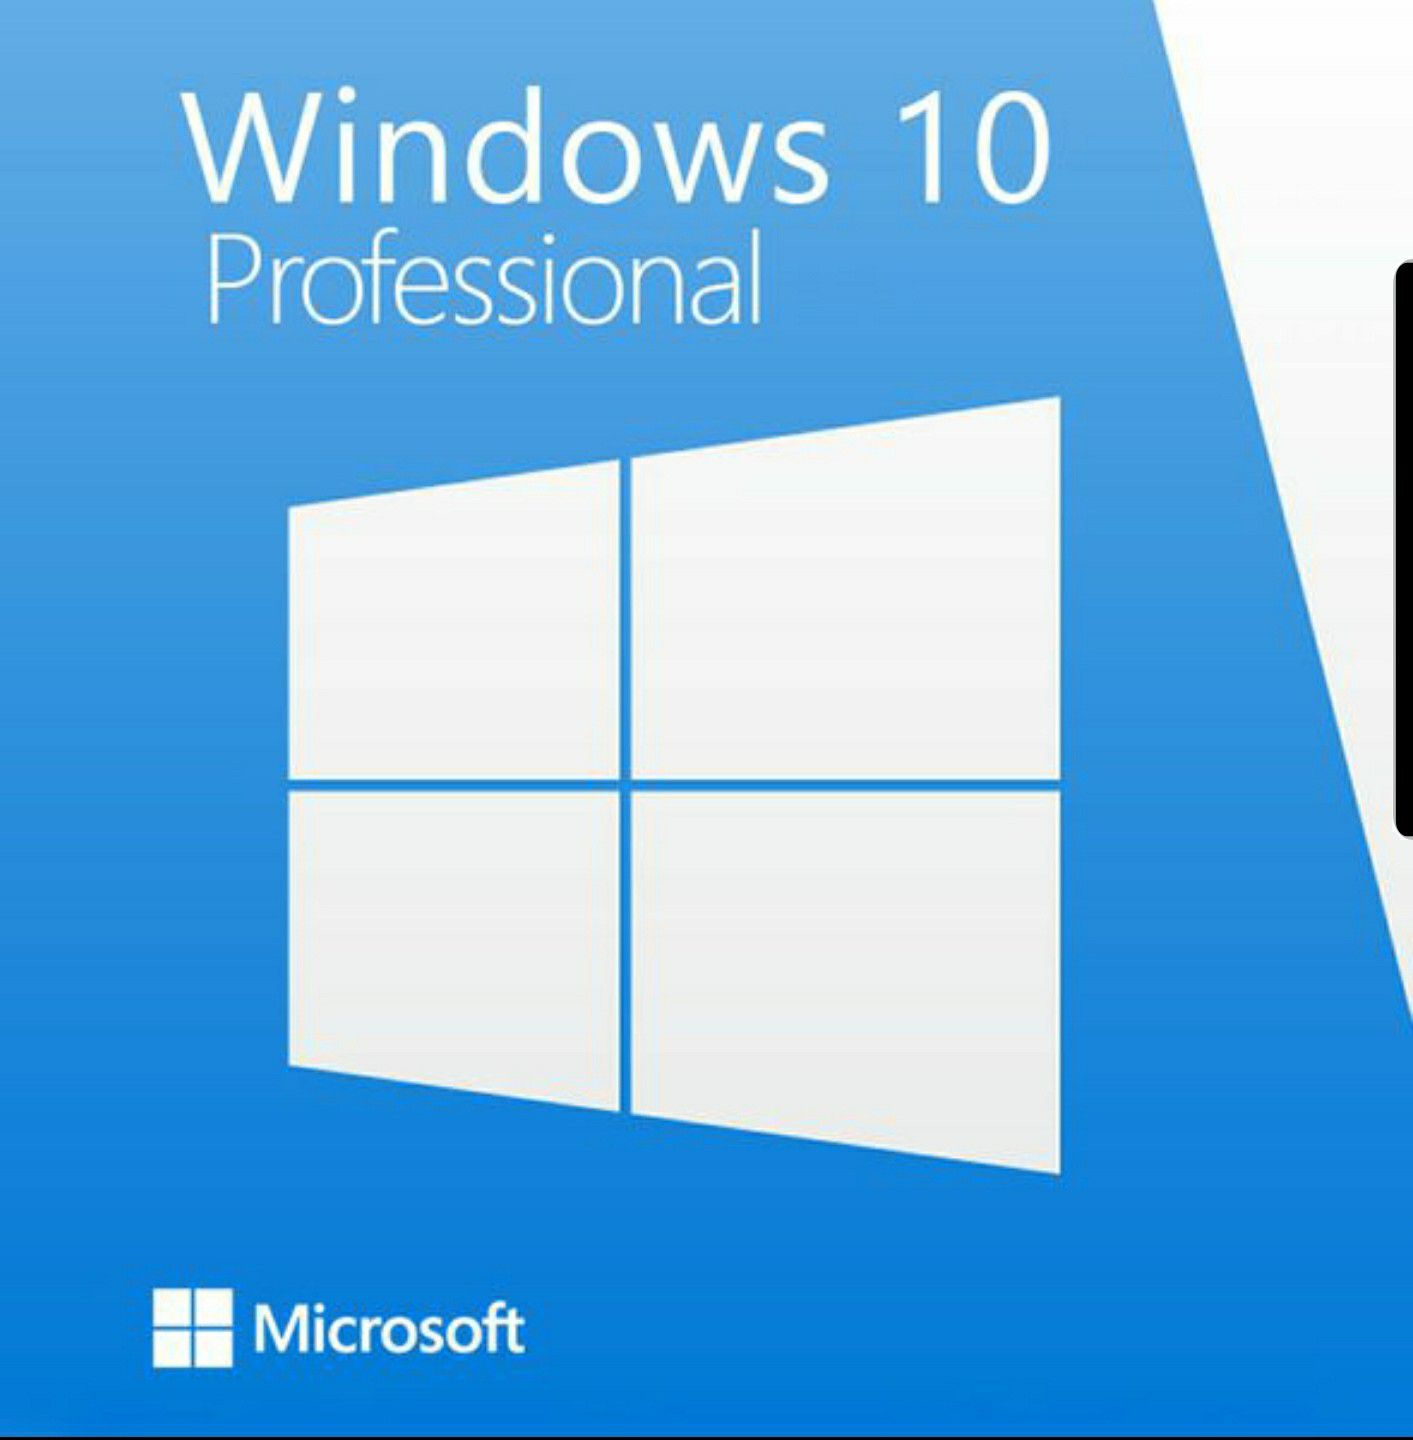 Windows 10 Install/Upgrade! Lifetime Activation Key + USB Installer